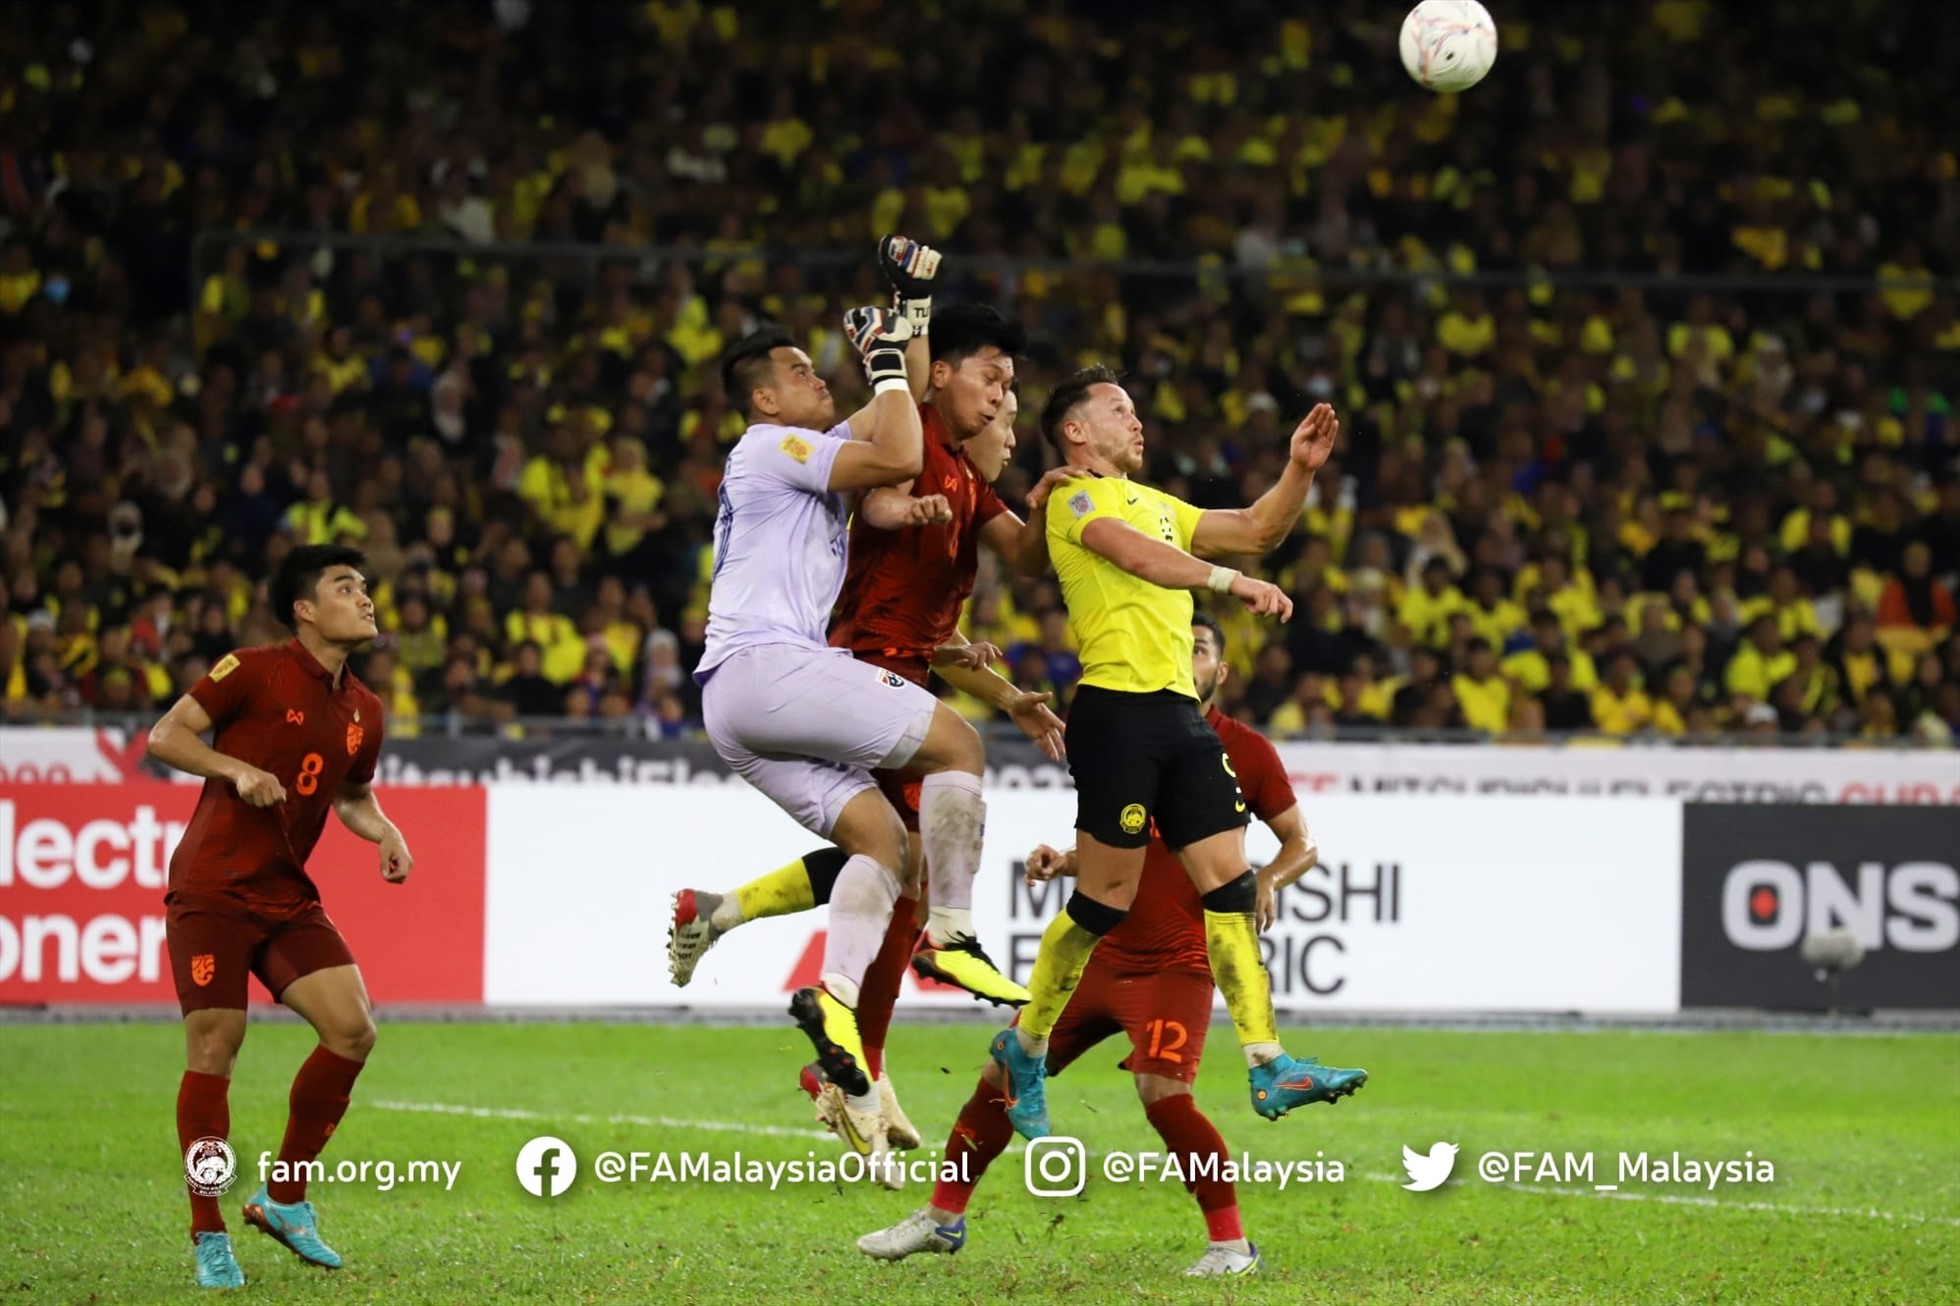 Căng thẳng xảy ra ngay khi hiệp 2 vừa bắt đầu khi lưới của Thái Lan lần thứ 2 rung lên. Các cầu thủ Malaysia cũng đã ăn mừng rất cuồng nhiệt khi nghĩ rằng bàn thắng thứ 2 đã đến.